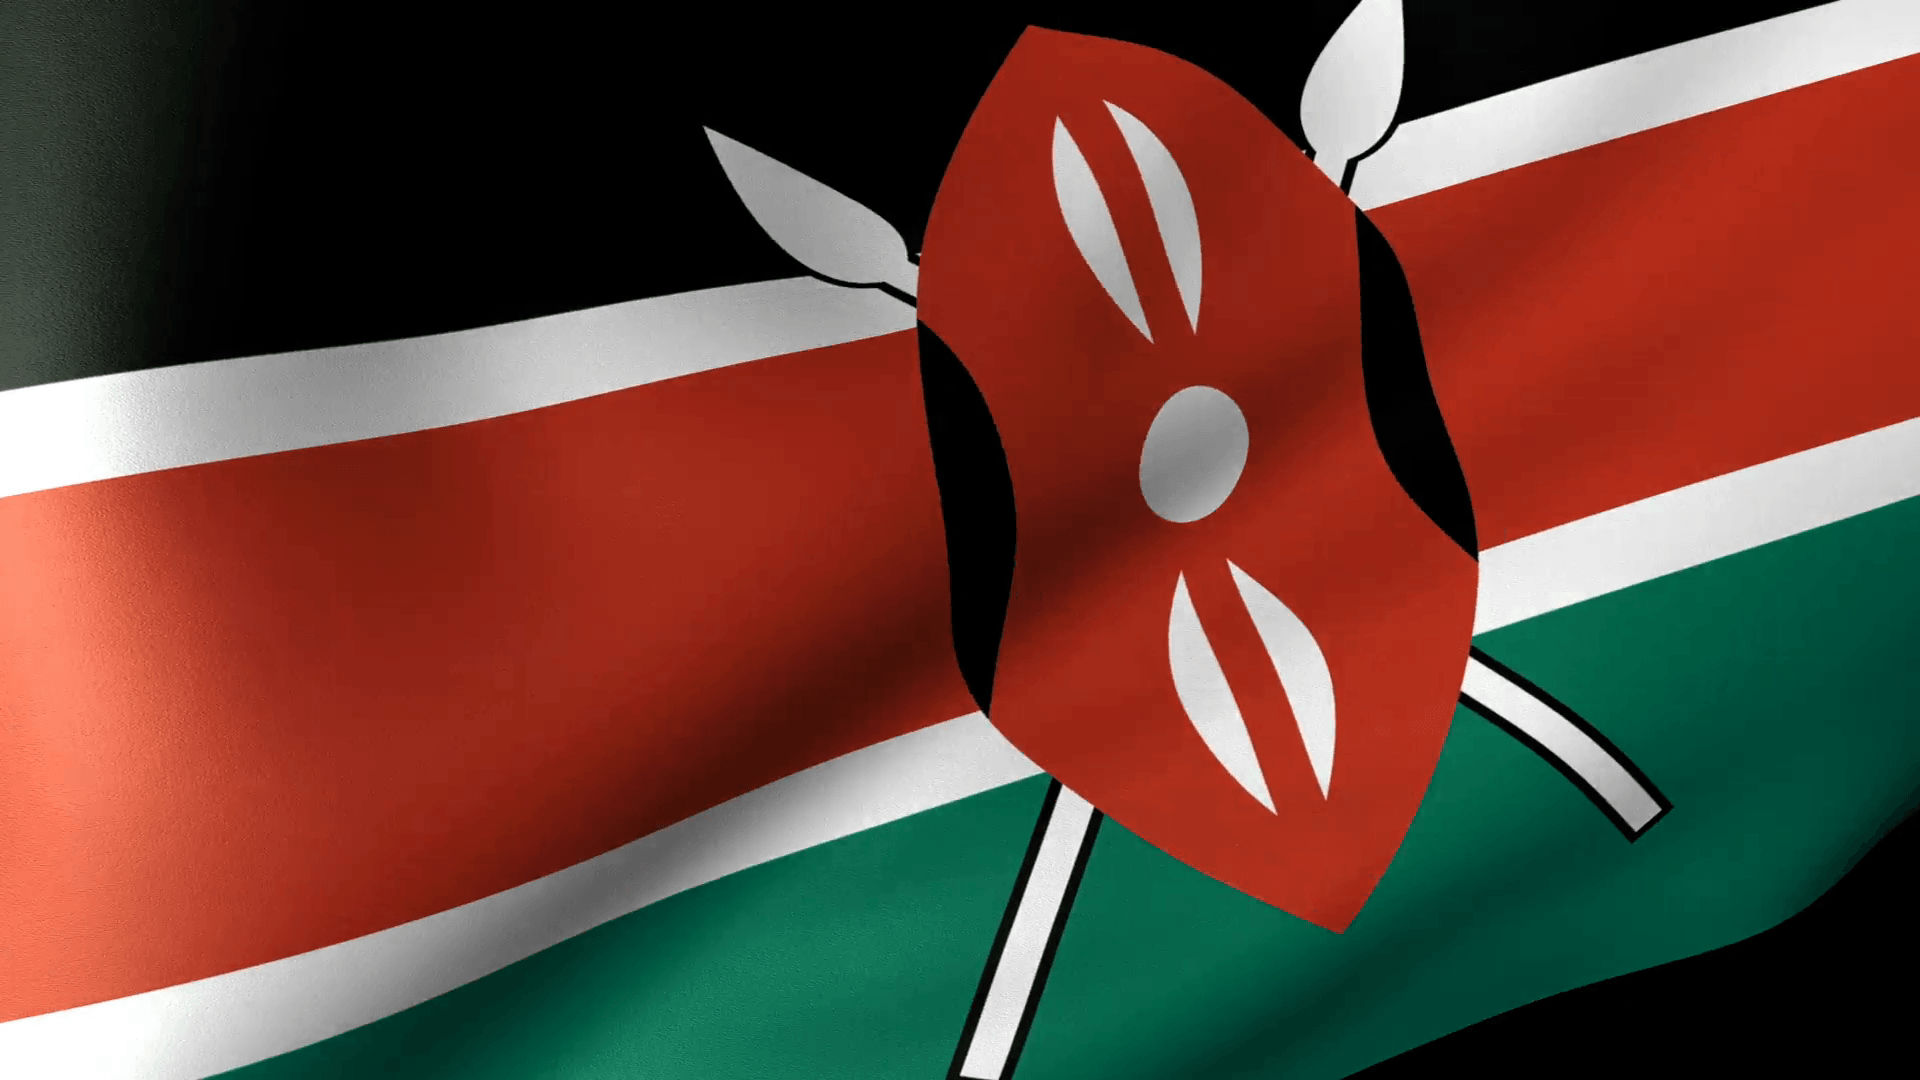 Kenyan Flag Wallpapers